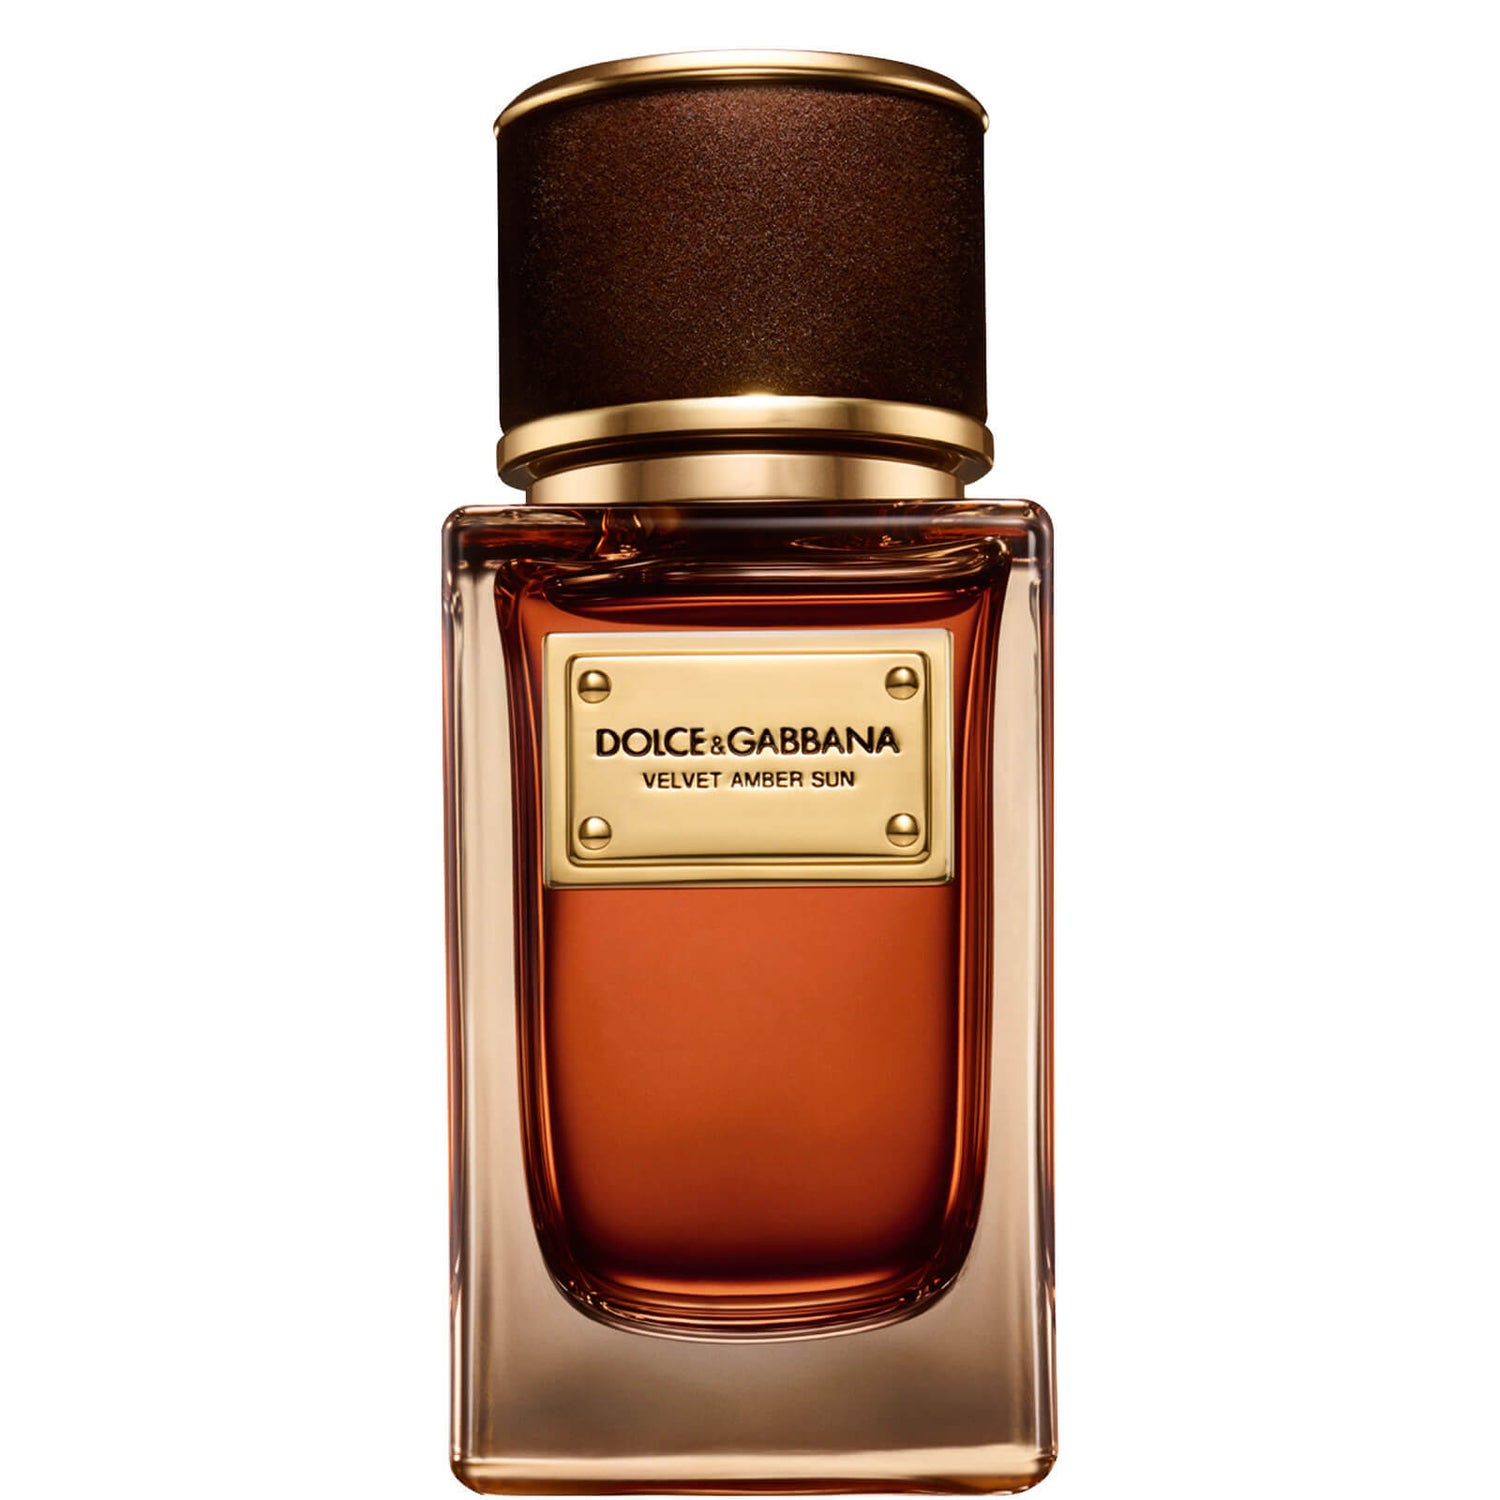 Dolce&Gabbana Velvet Amber Sun Eau de Parfum - 50ml